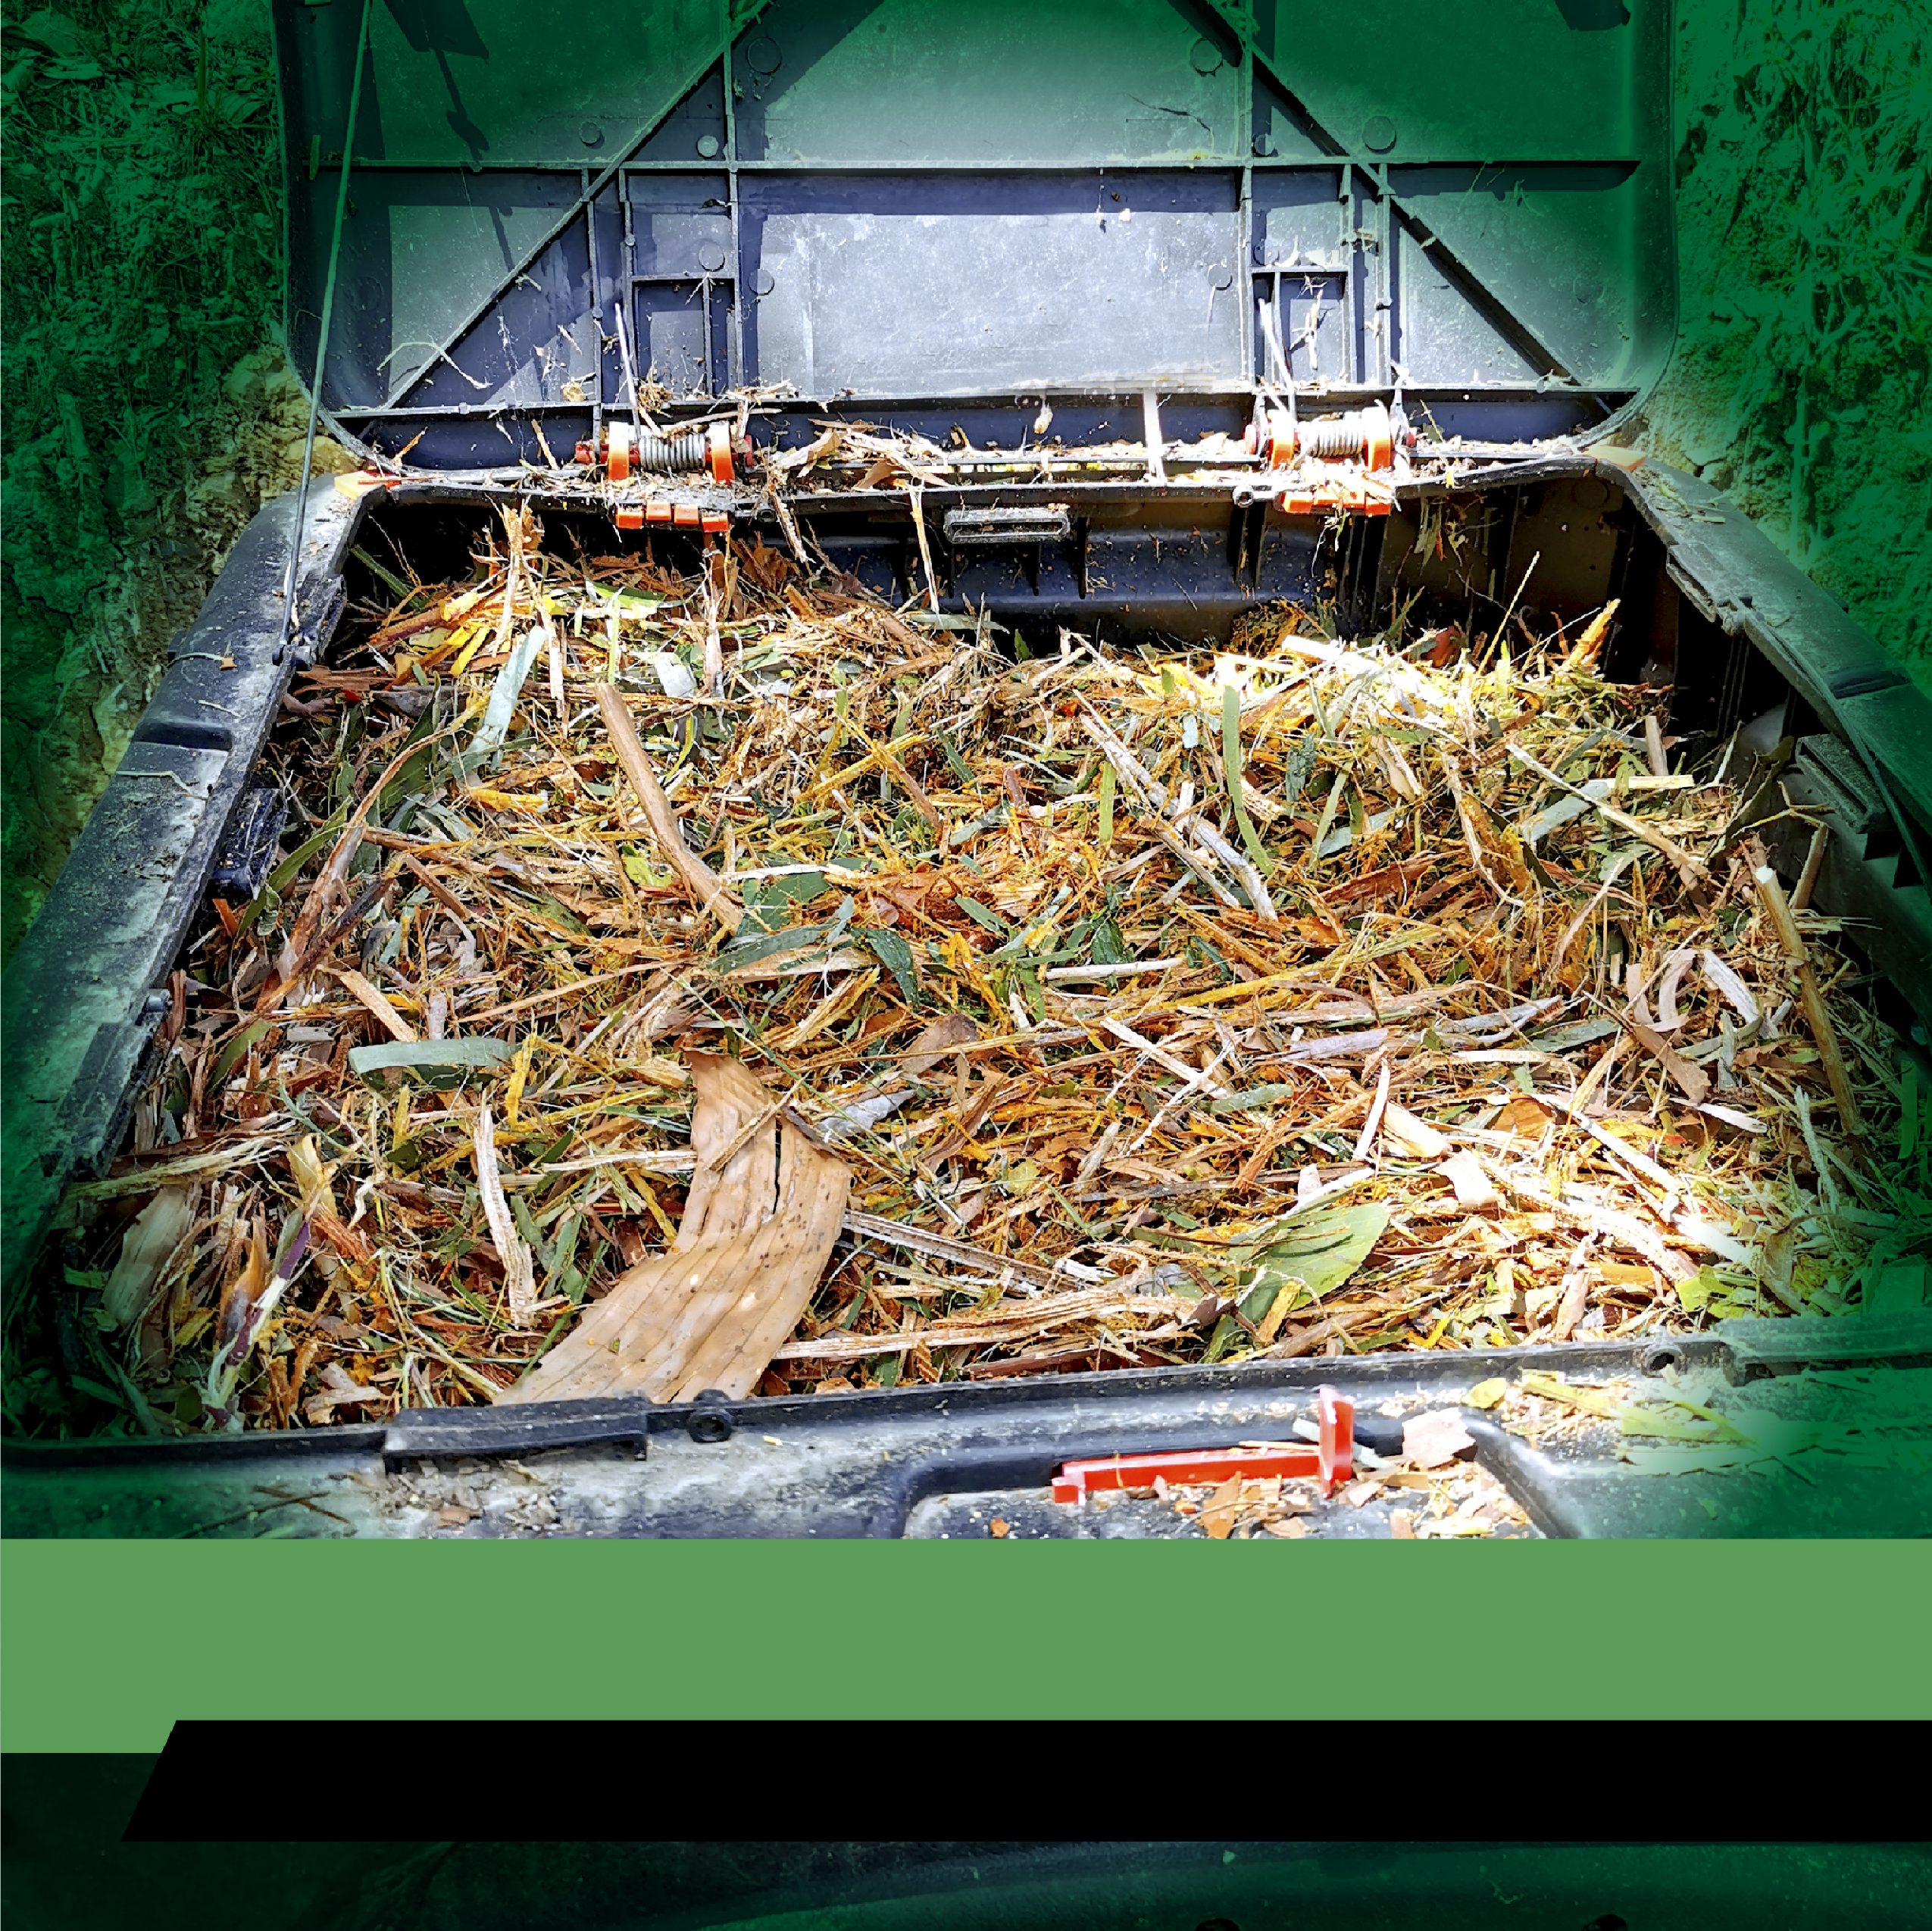 Crea tu propio abono y compostaje Durespo-01-01 webinar residuos organicos